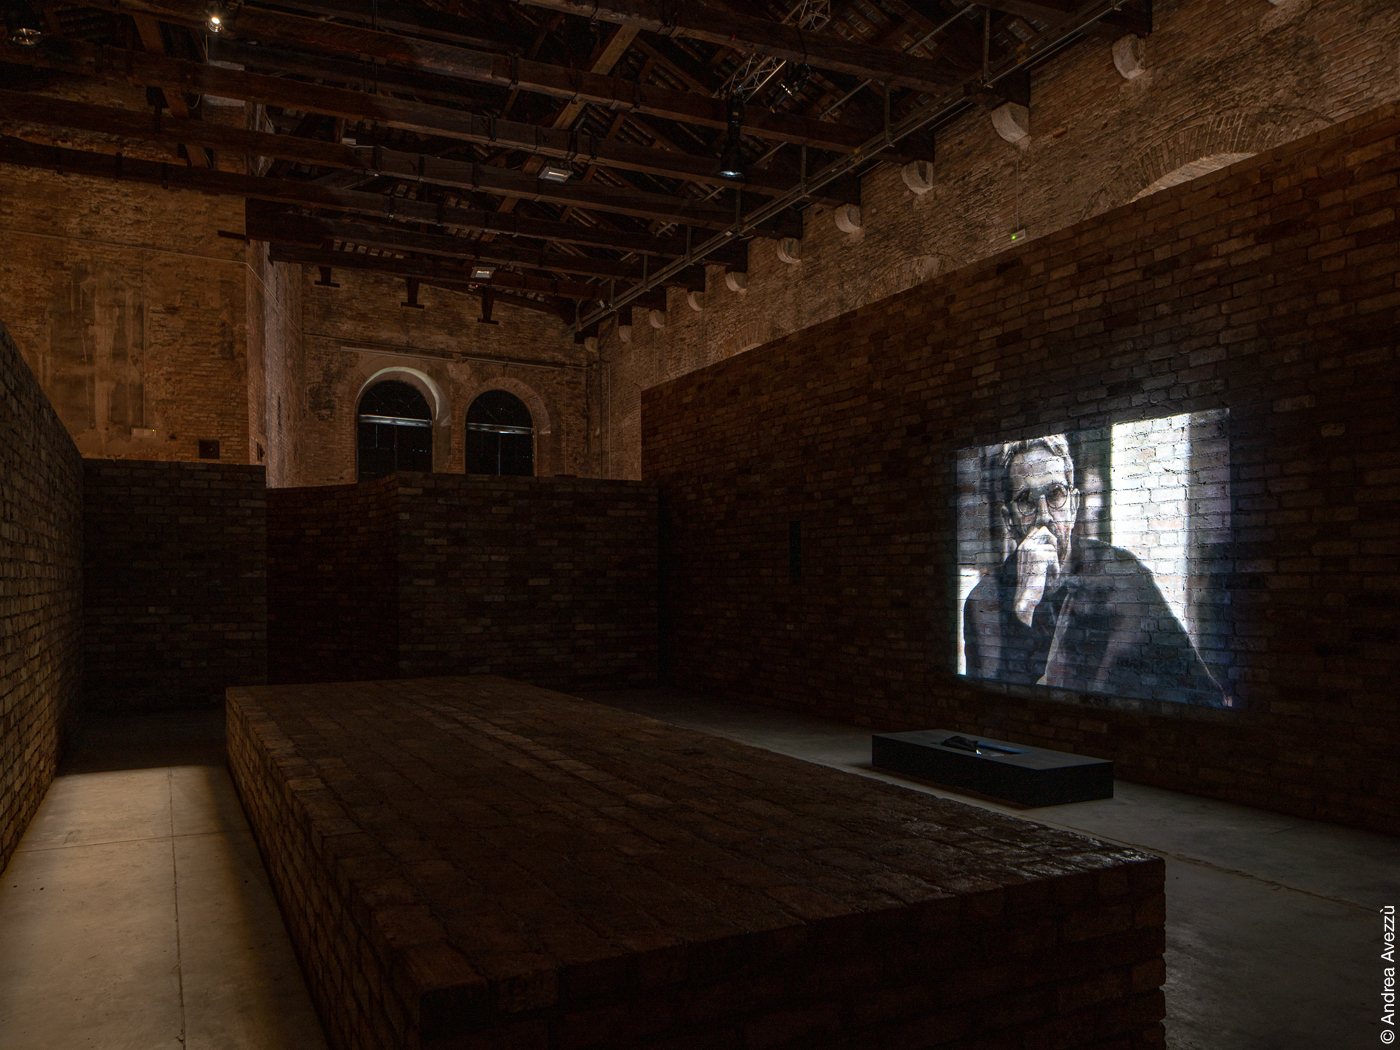 Filmprojektion auf dunklen Ziegelwänden in alter Halle